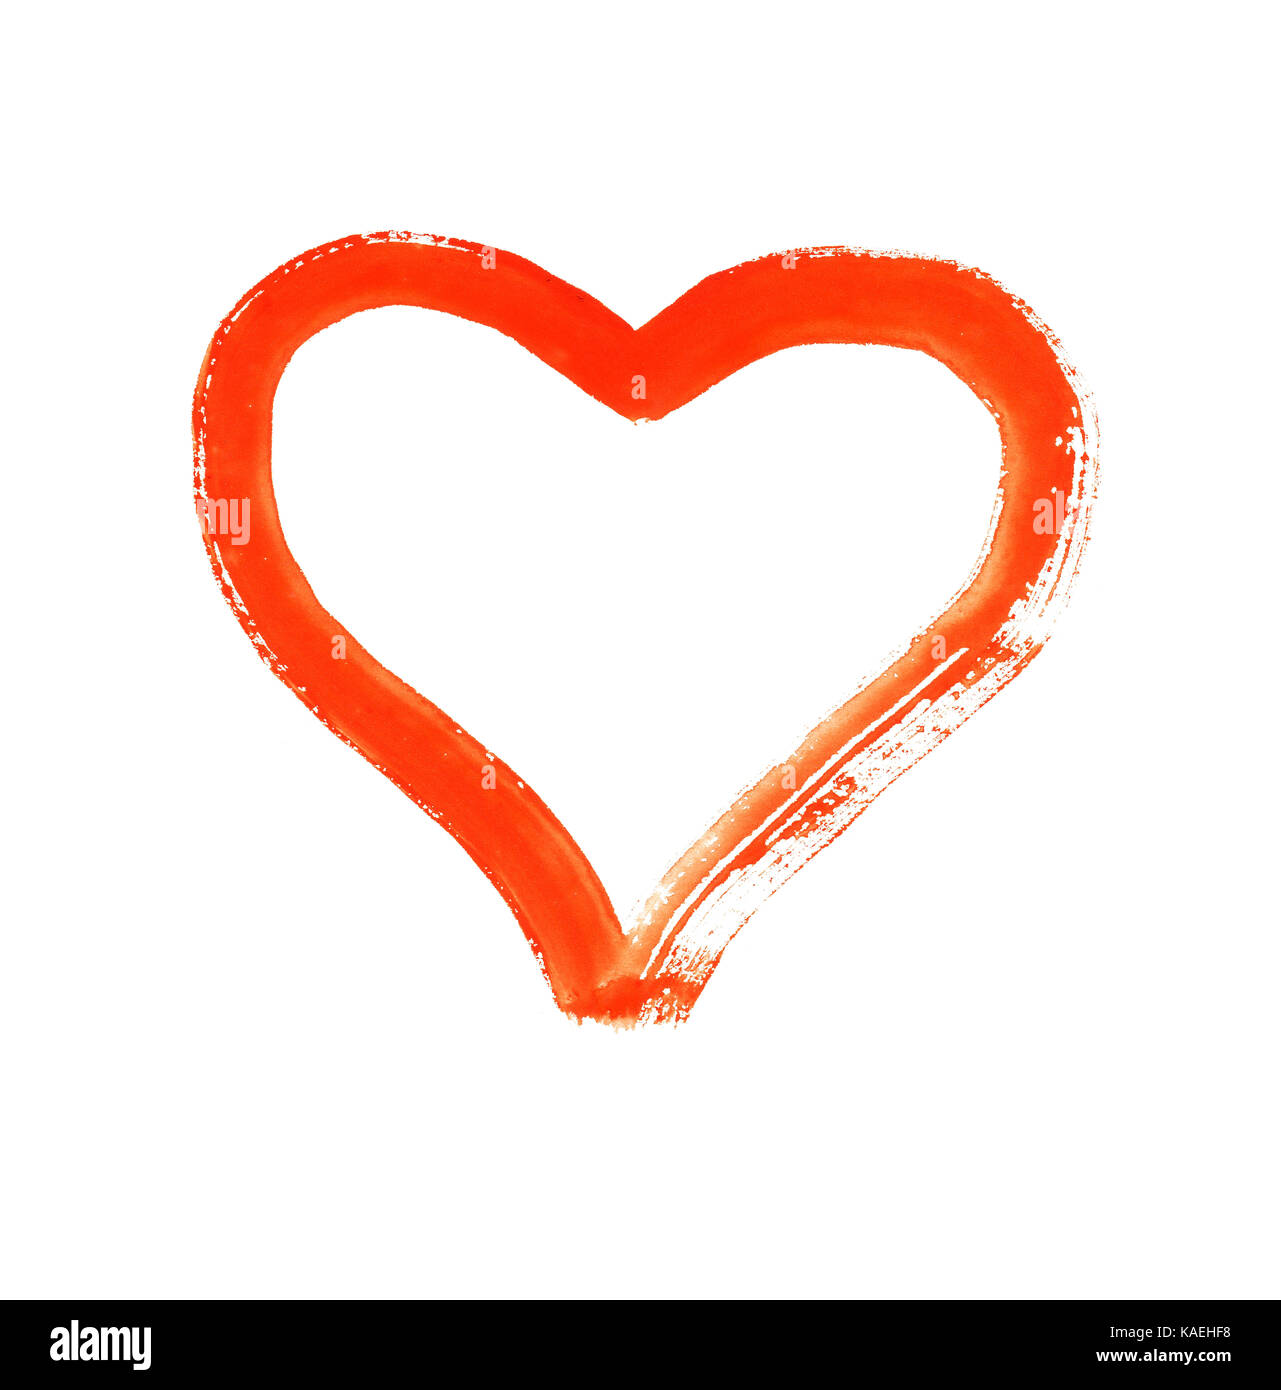 Coeur - symbole de l'amour - aquarelle sur papier - isolé Banque D'Images